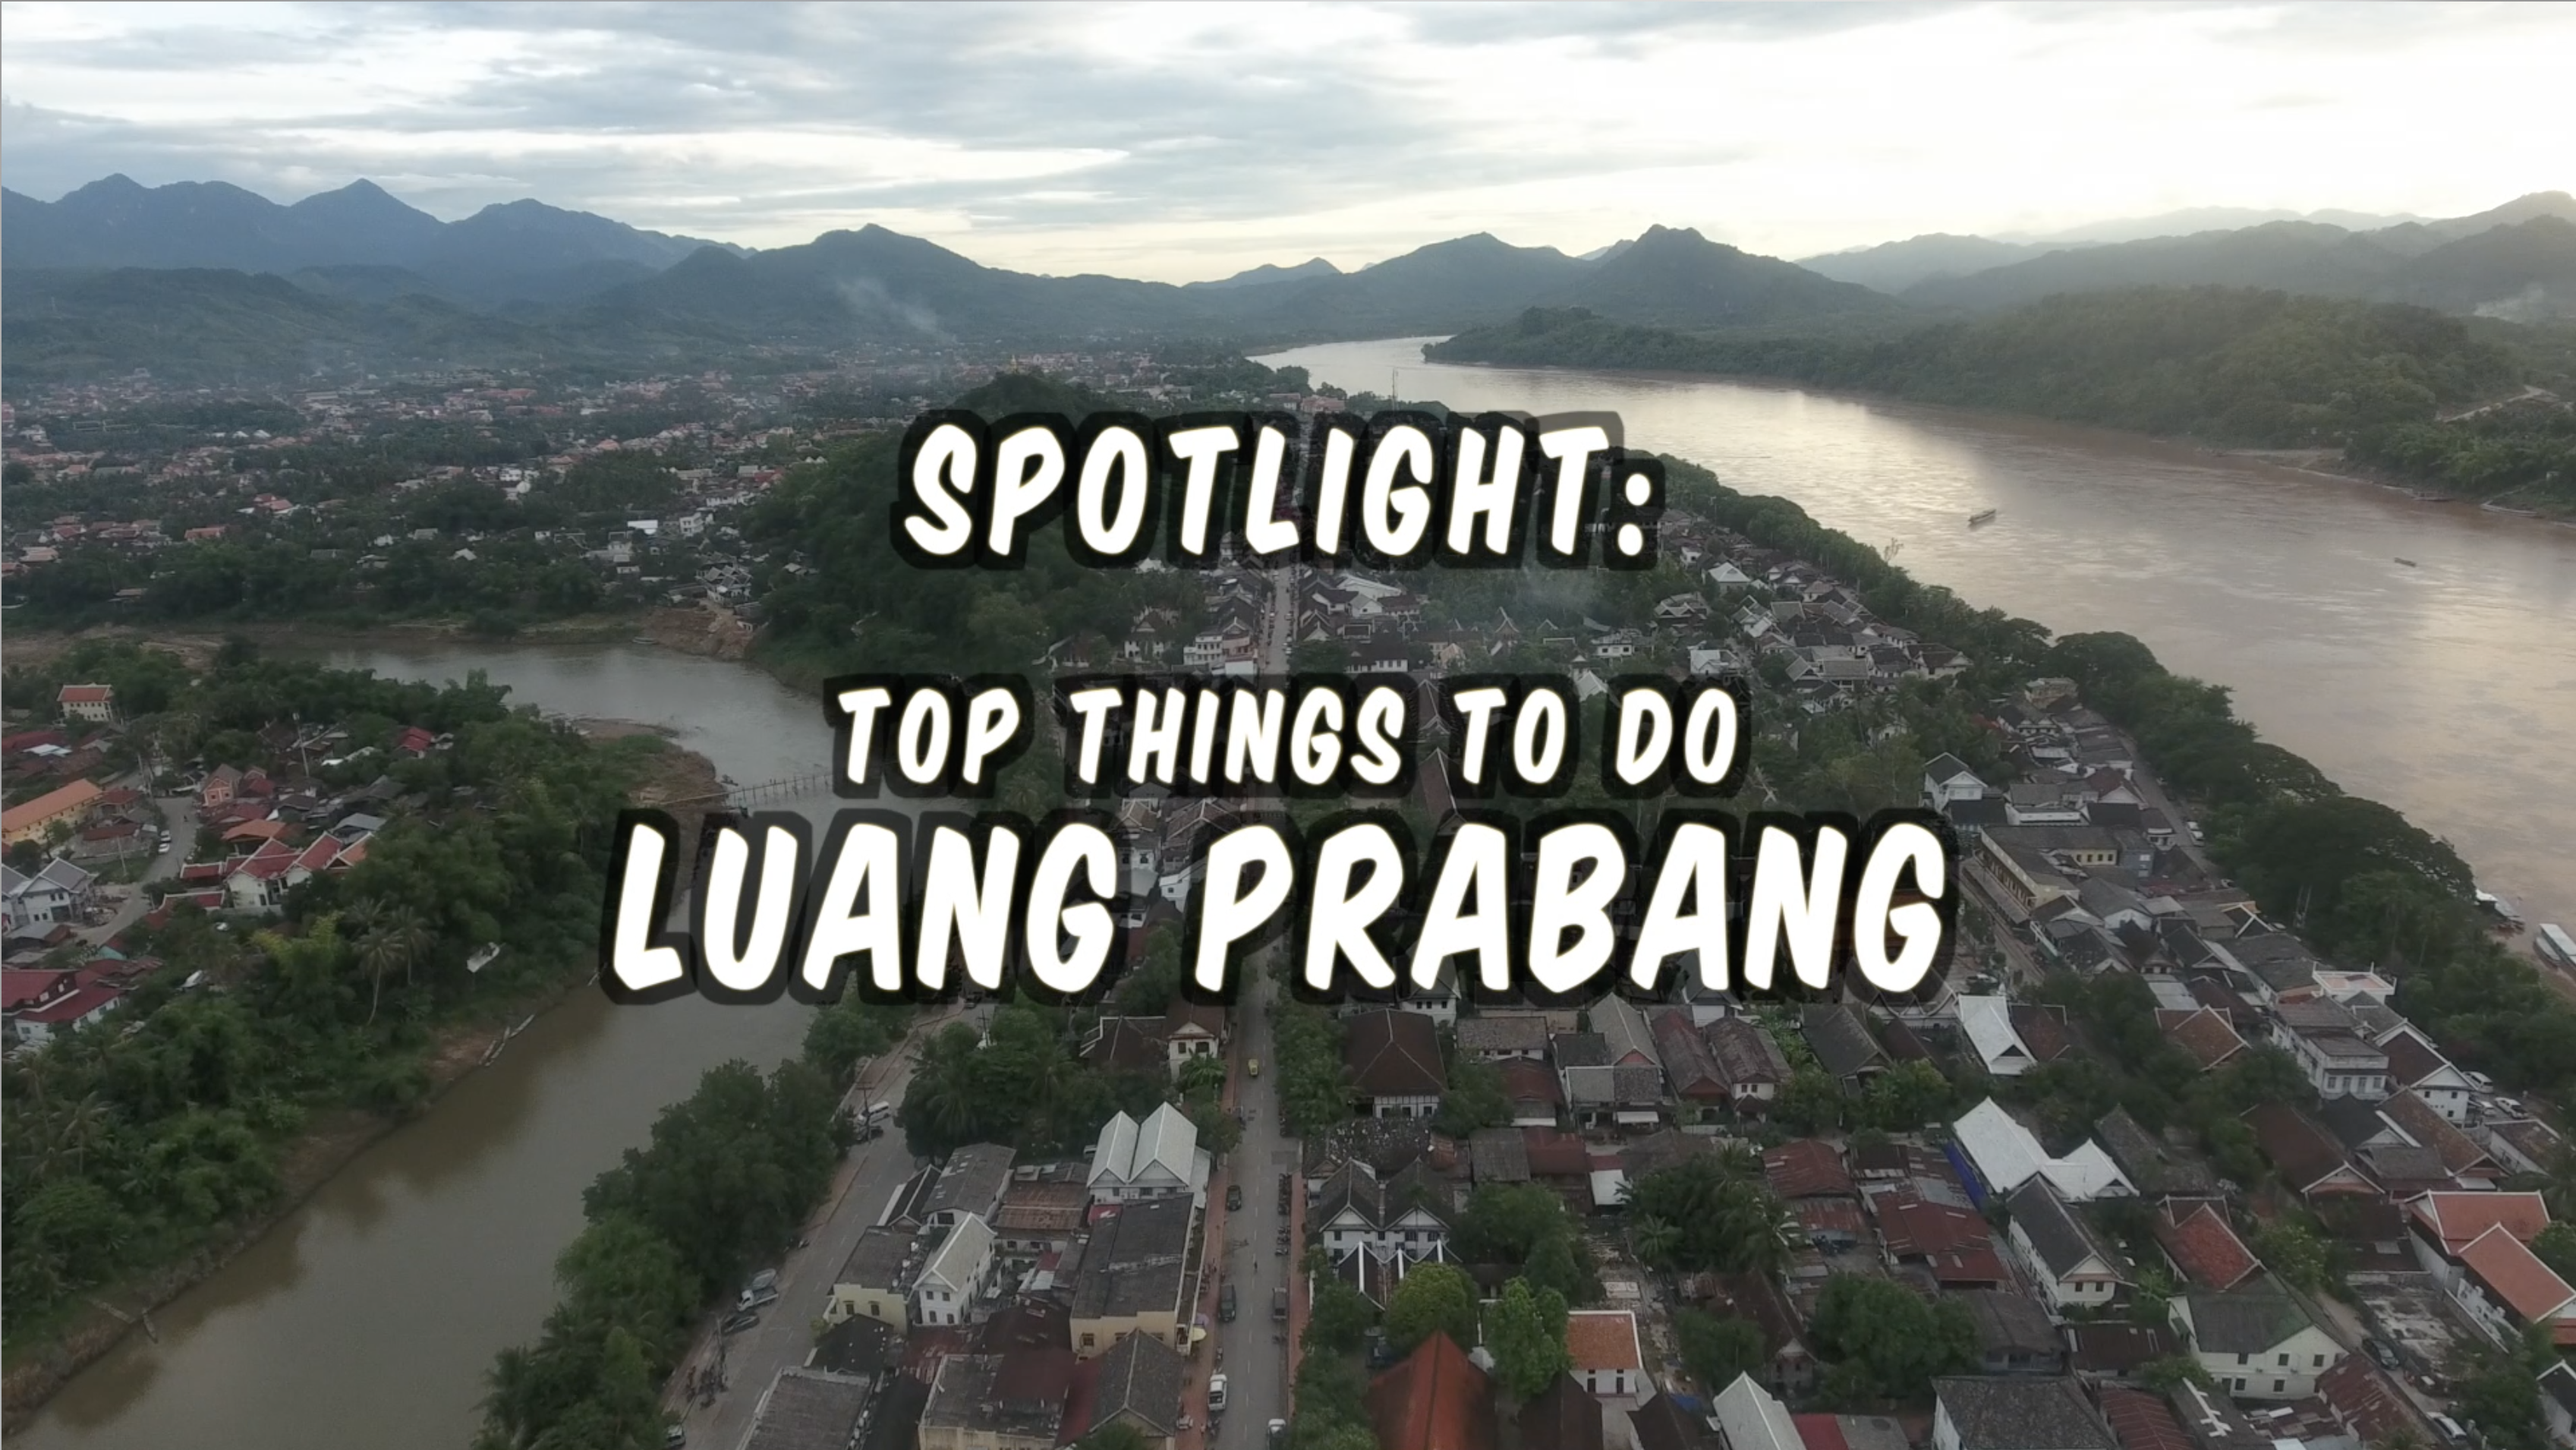 Travel Destination Luang Prabang Contest